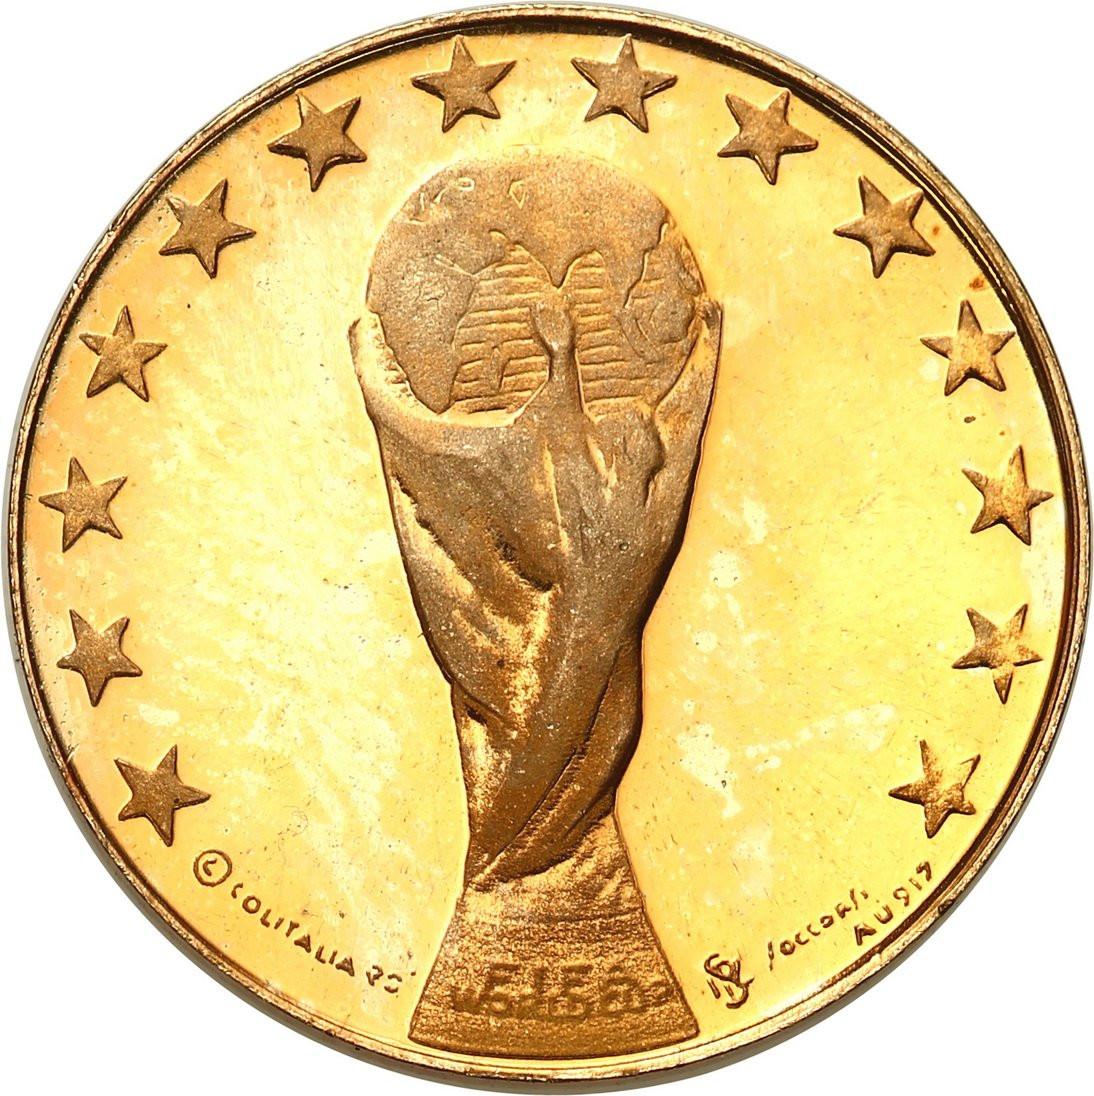 Włochy. FIFA World Cup - Złoty medal 1990 Włochy